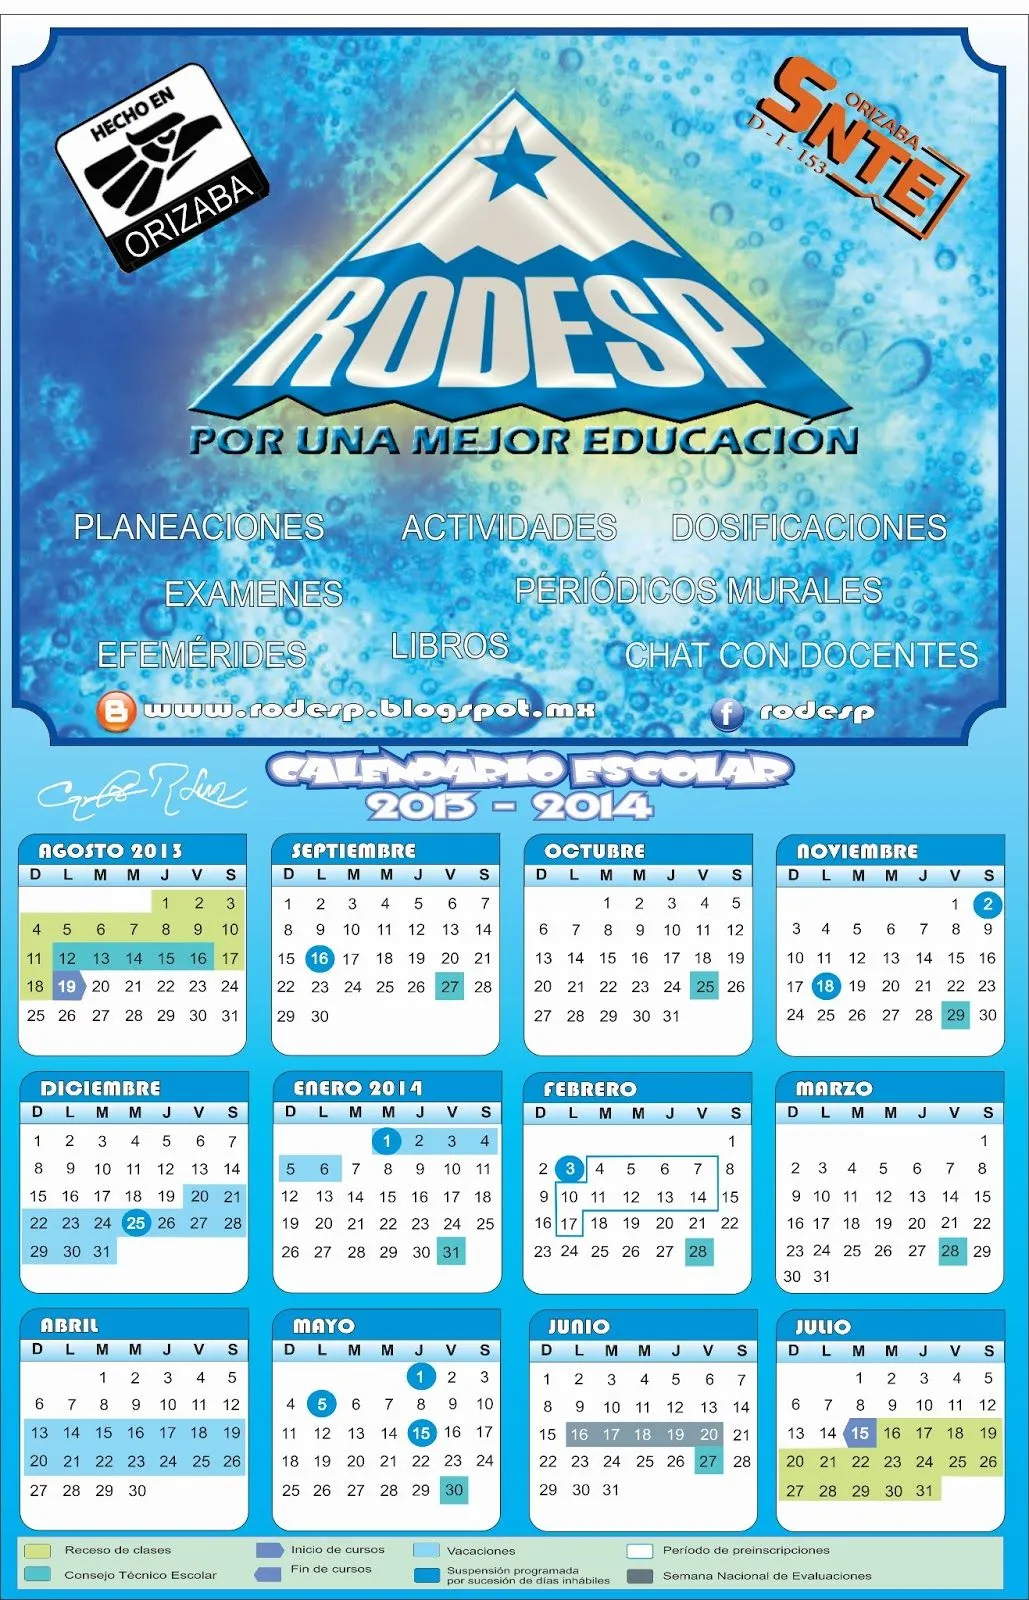 Calendario escolar 2013 - 2104 : Por una mejor educación (